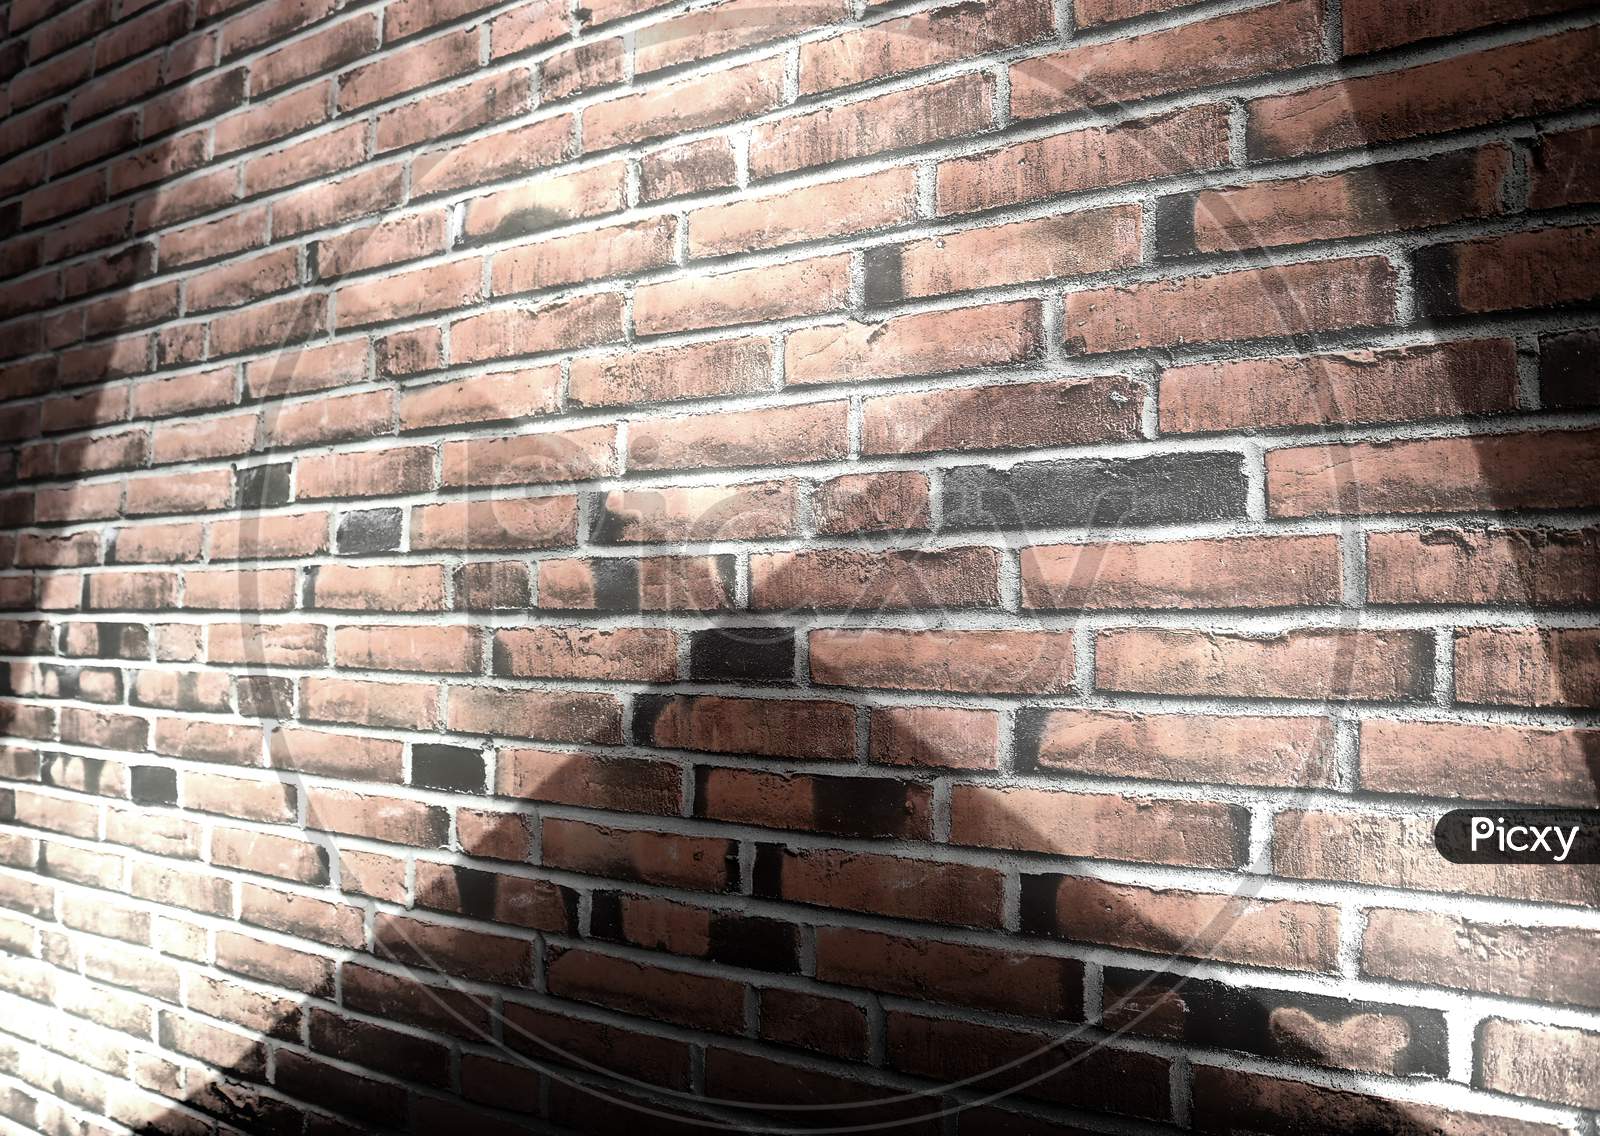 Beautiful spotlights shining at an aged and weathered brick wall